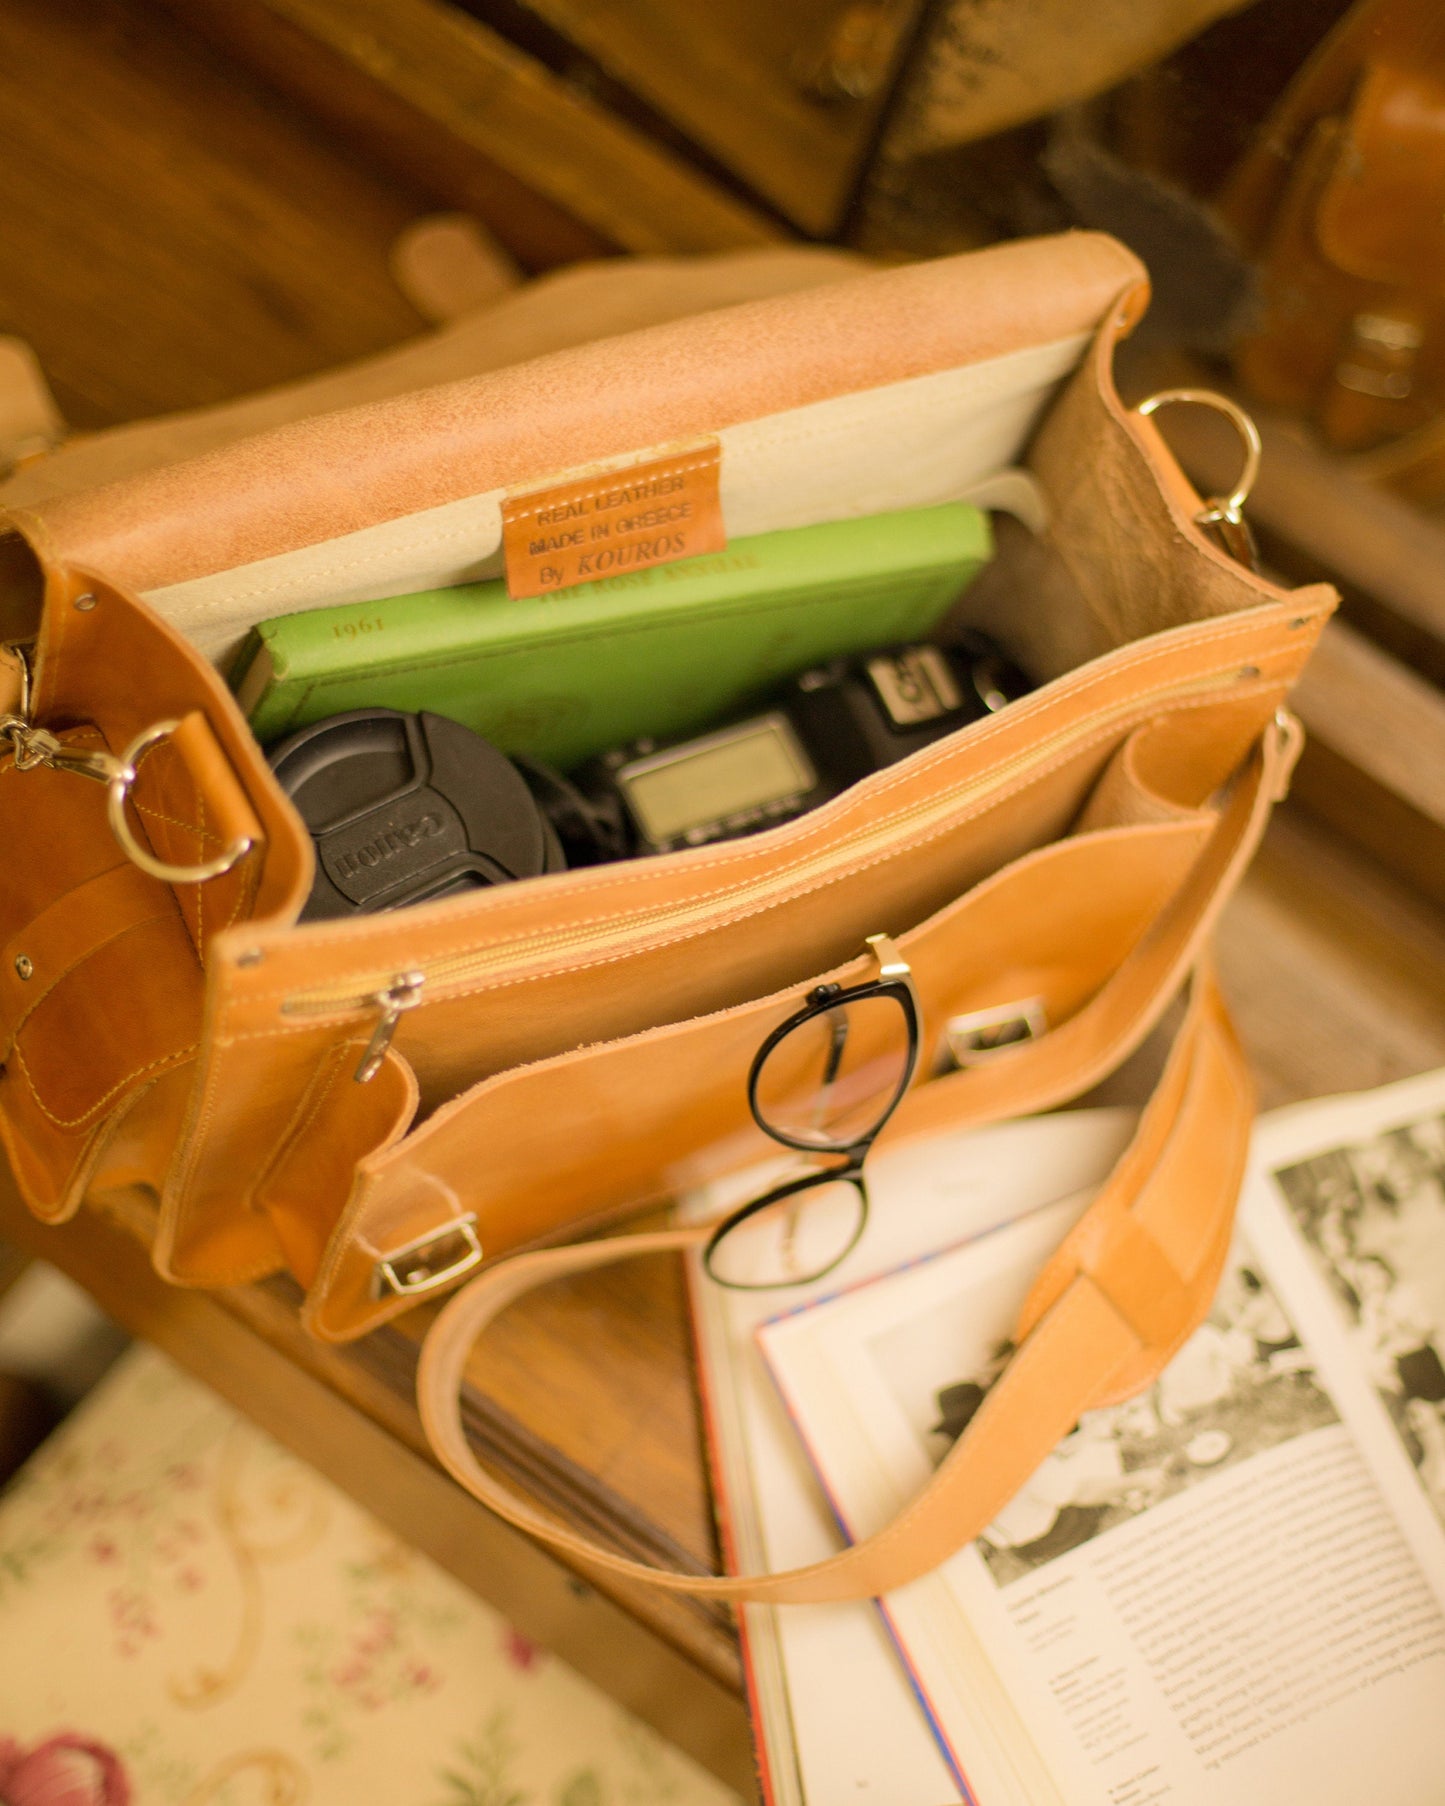 Natural leather camera bag, Vintage camera bag, Kameratasche, Unisex dslr camera bag